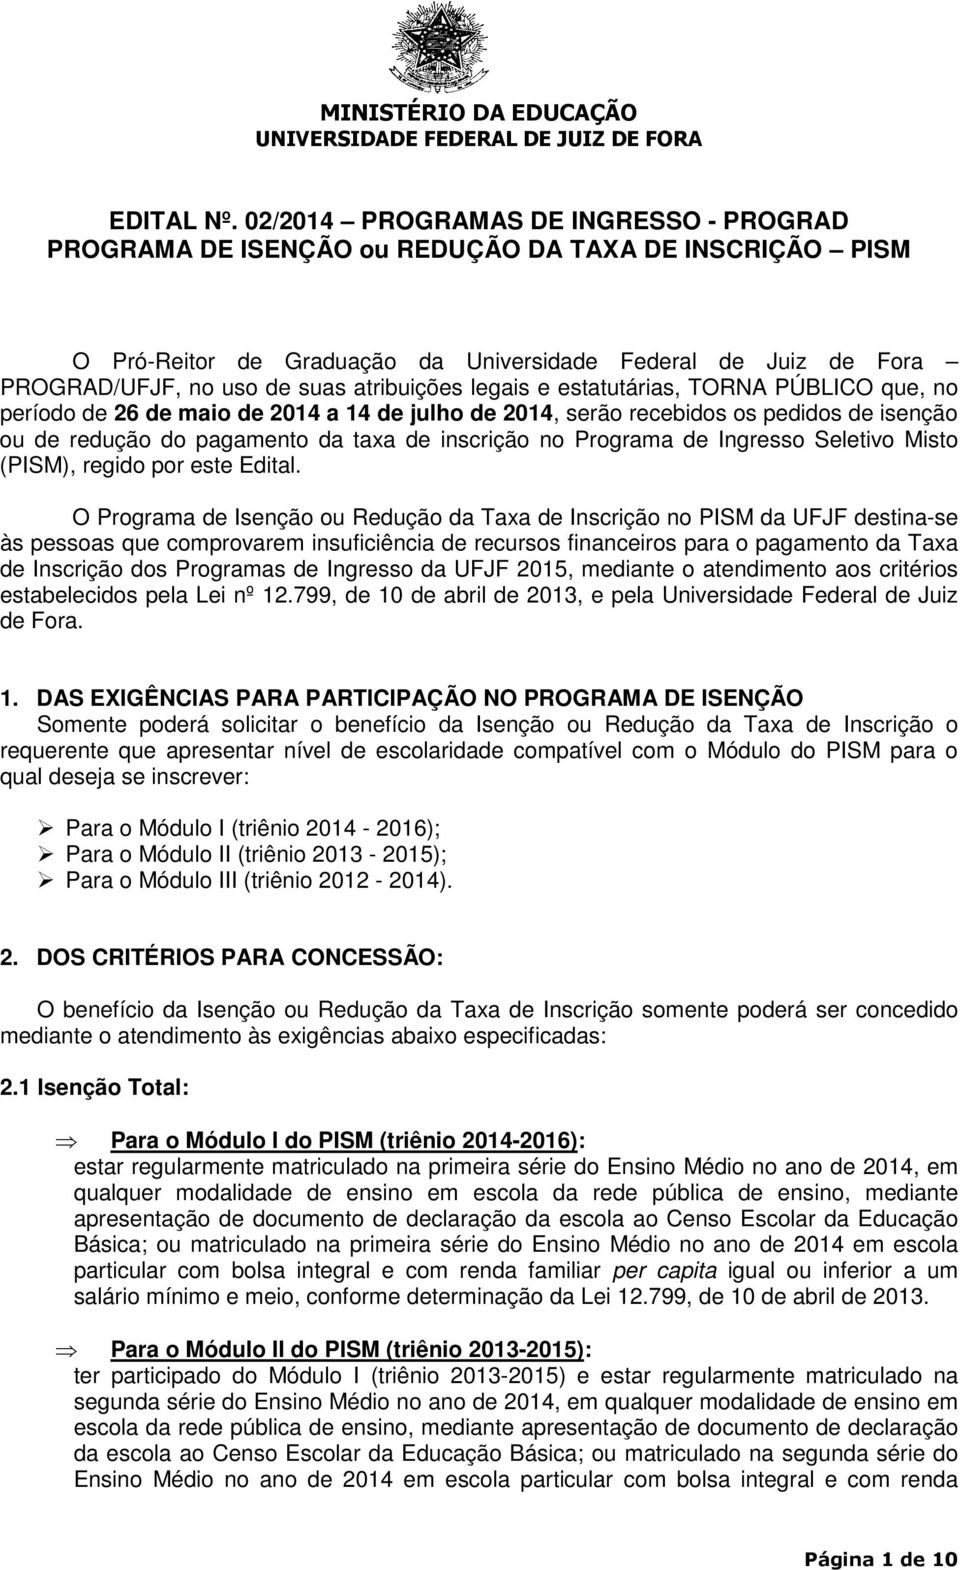 atribuições legais e estatutárias, TORNA PÚBLICO que, no período de 26 de maio de 2014 a 14 de julho de 2014, serão recebidos os pedidos de isenção ou de redução do pagamento da taxa de inscrição no